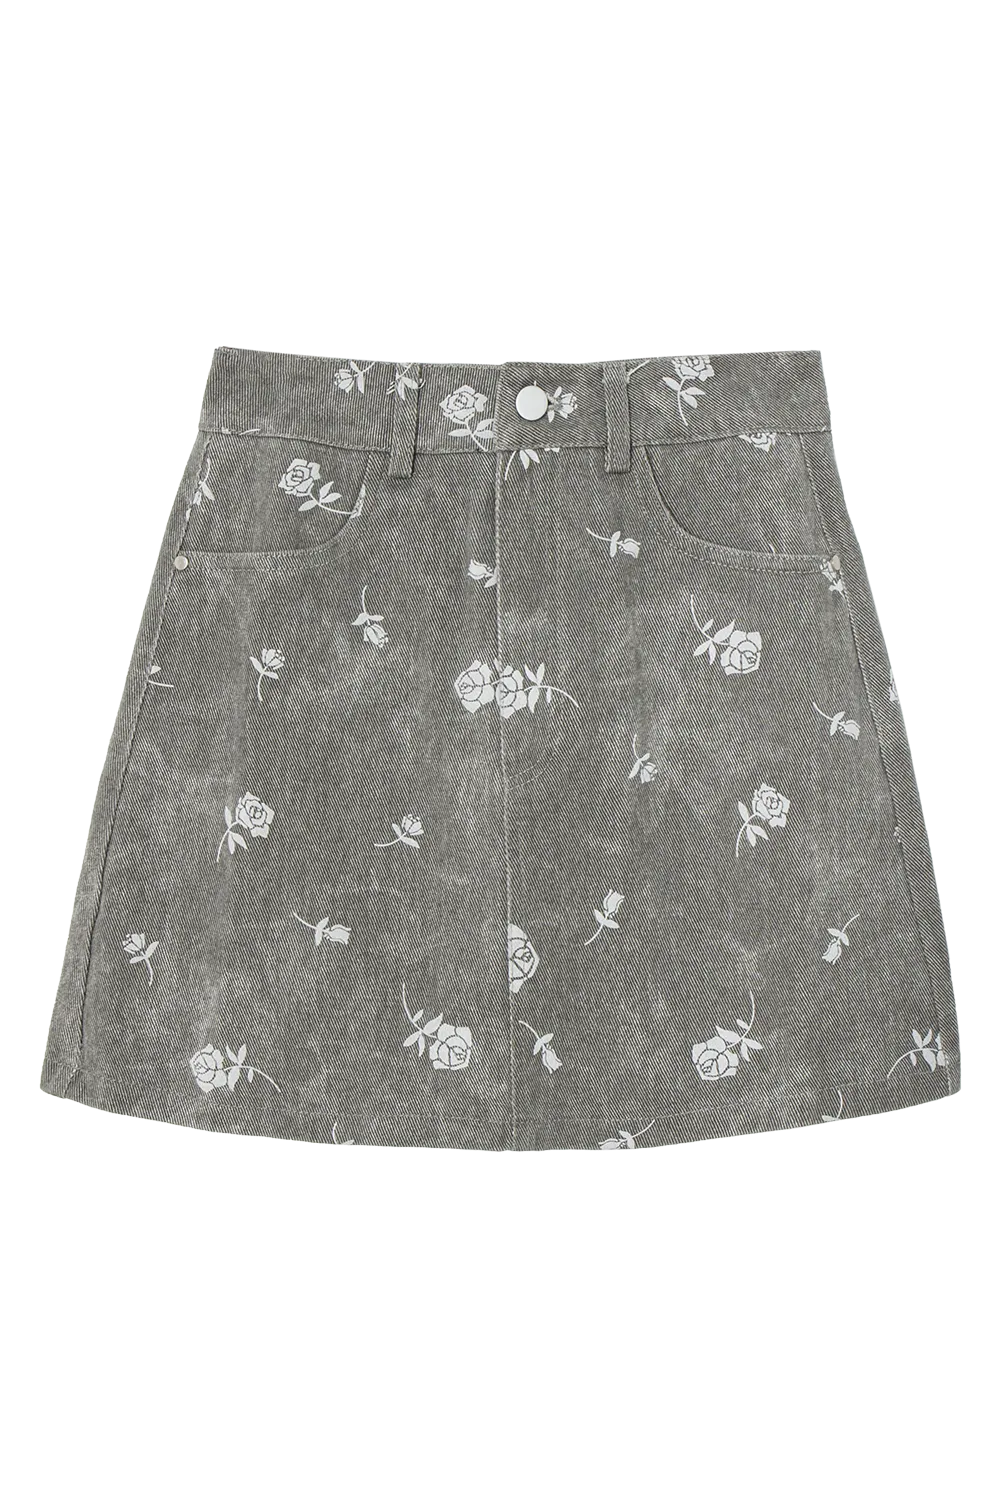 Skirt Denim A-Line Pertengahan Peha Wanita dengan Cetakan Bunga